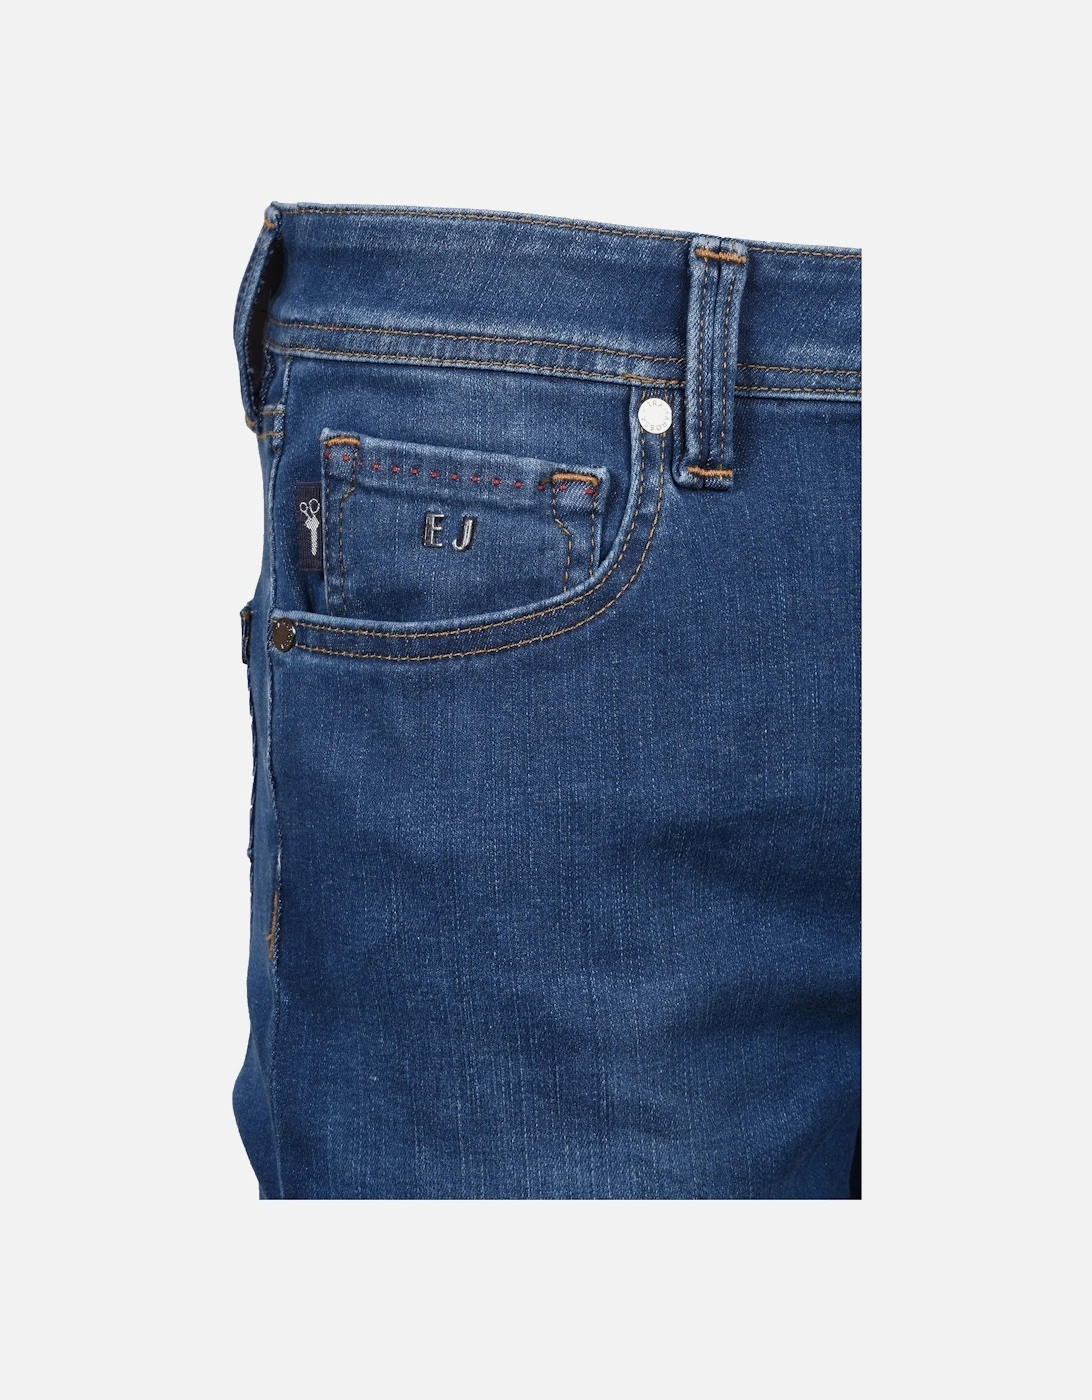 Leonardo Super Slim Fit Jeans Light Washed Denim